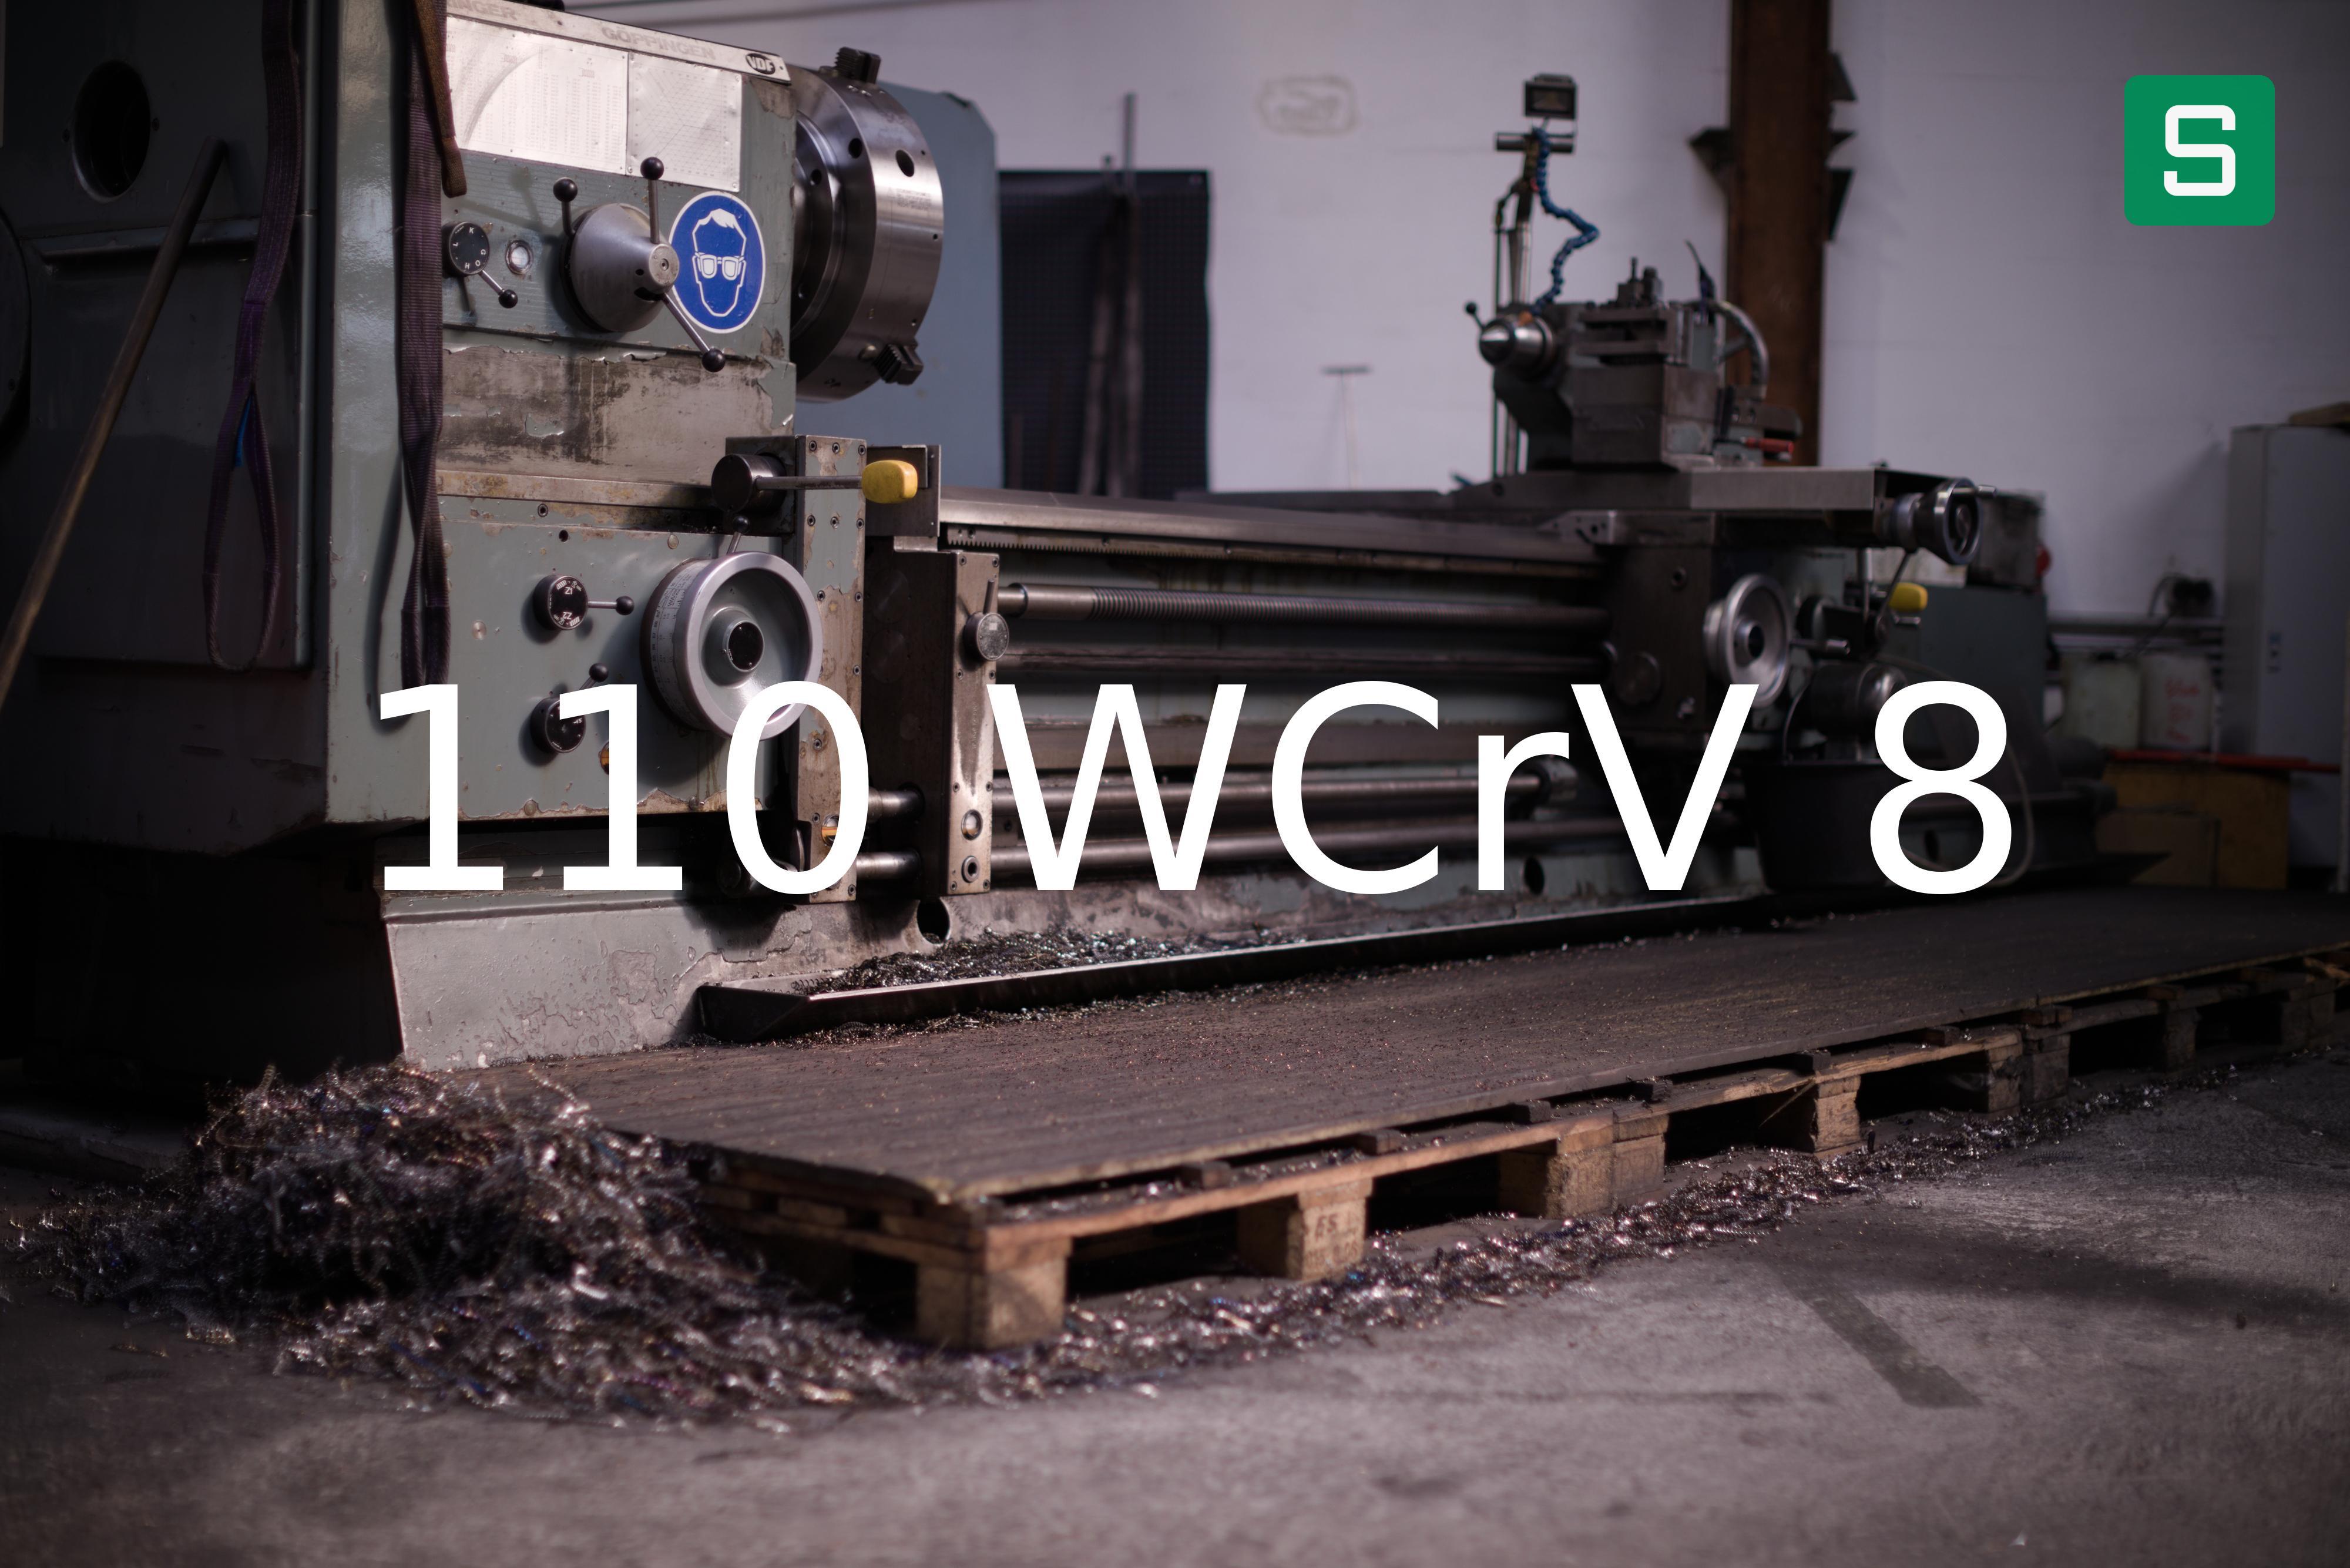 Steel Material: 110 WCrV 8